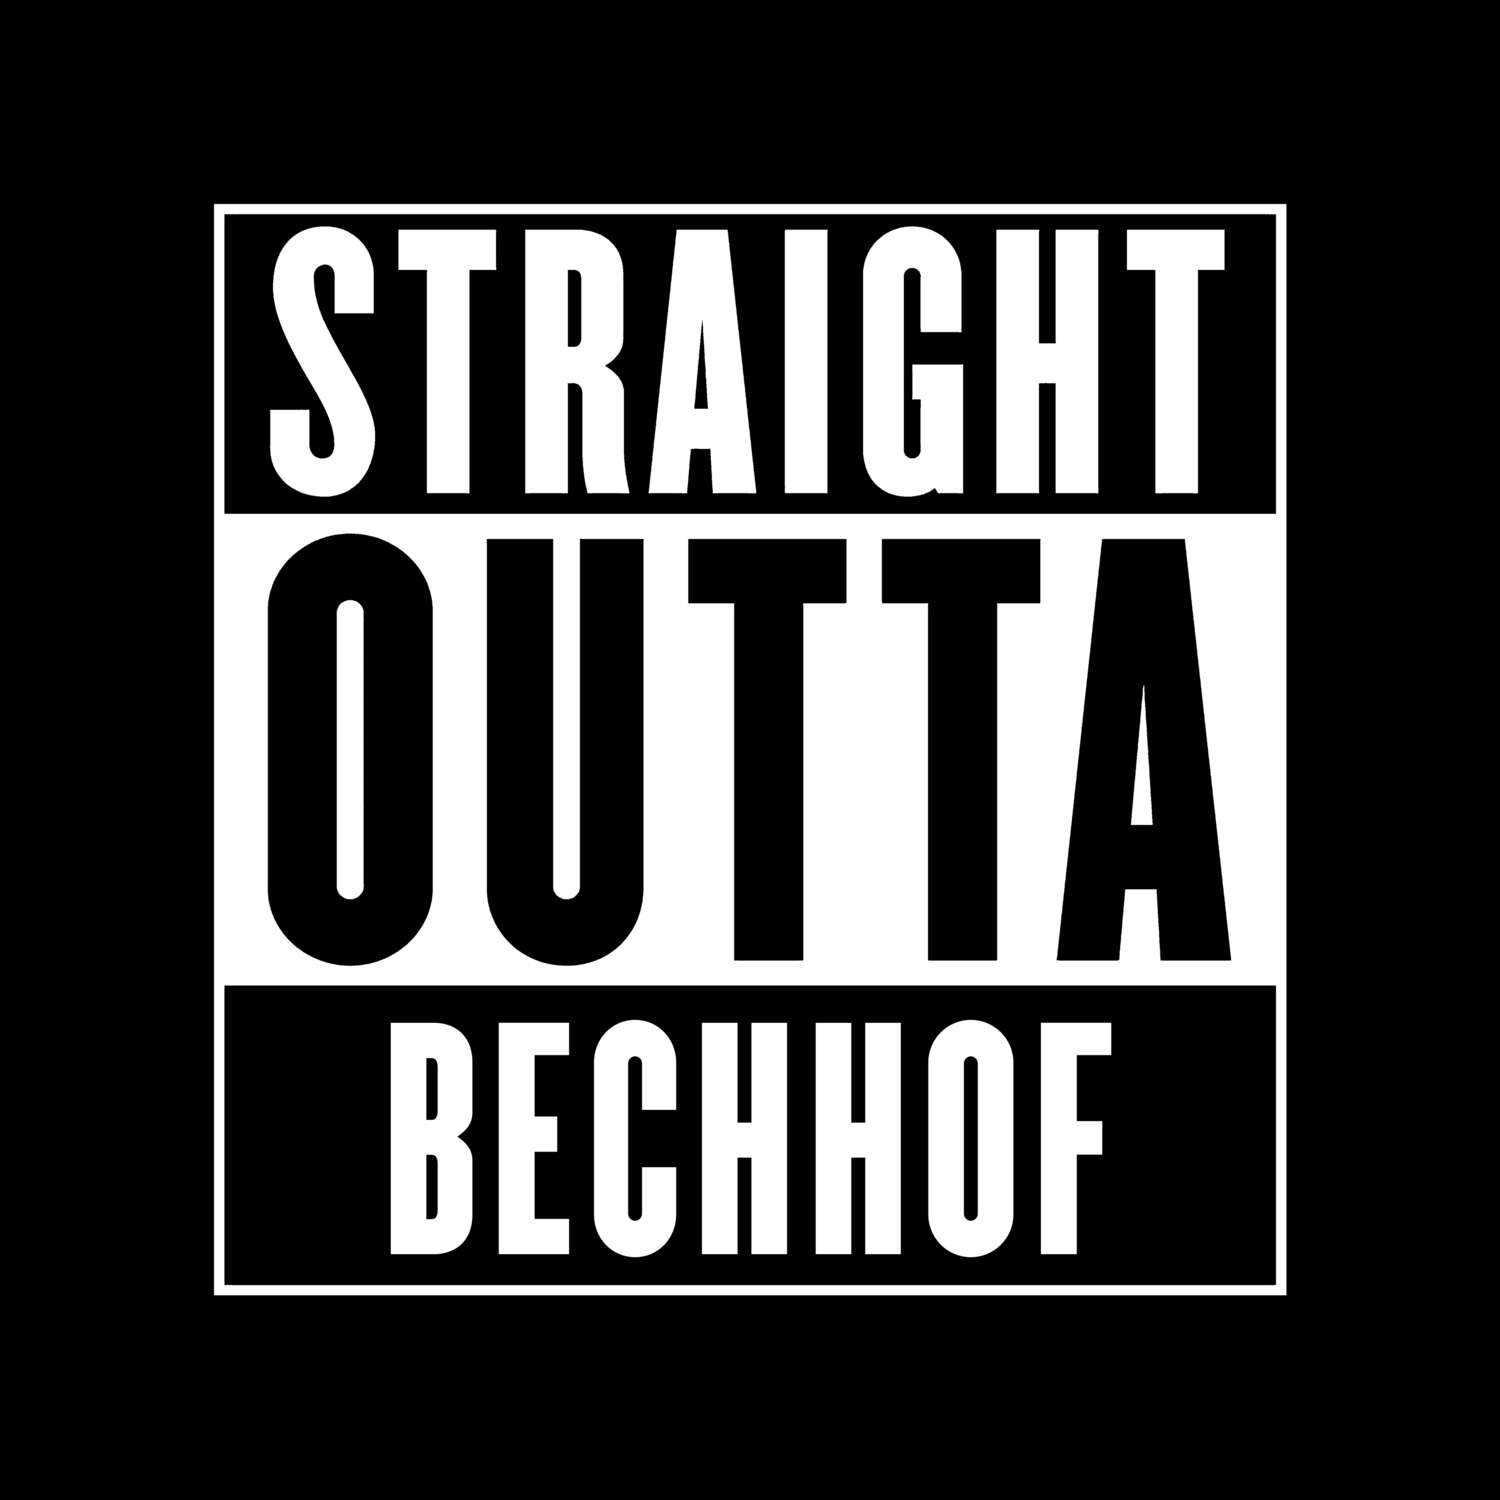 Bechhof T-Shirt »Straight Outta«